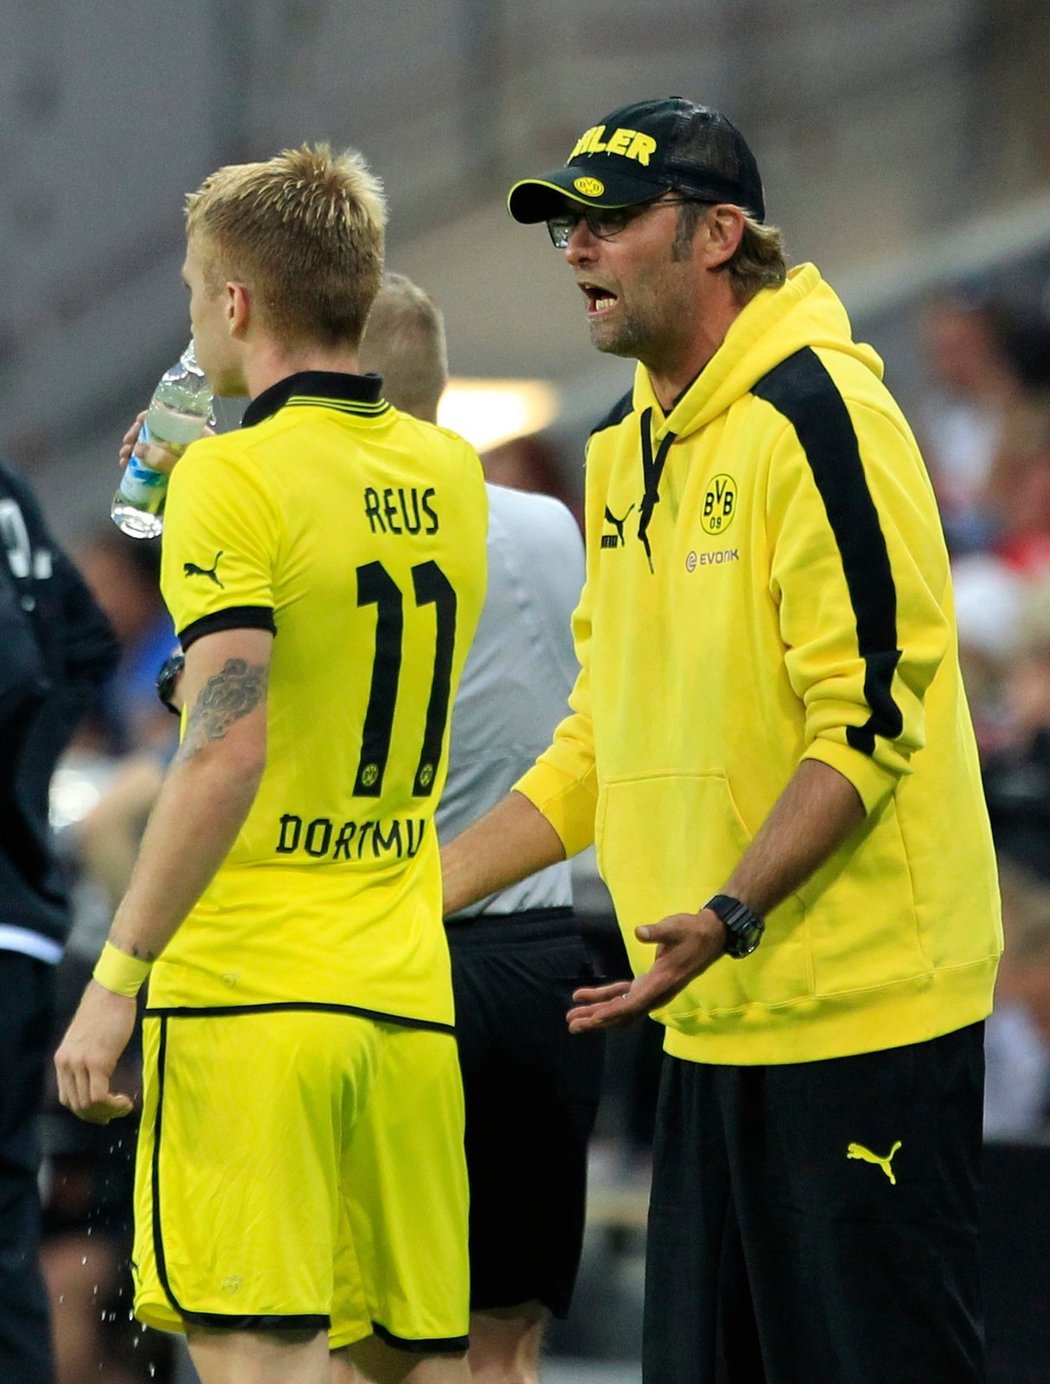 Trenér Dortmundu Jürgen Klopp udílí pokyny Reusovi.